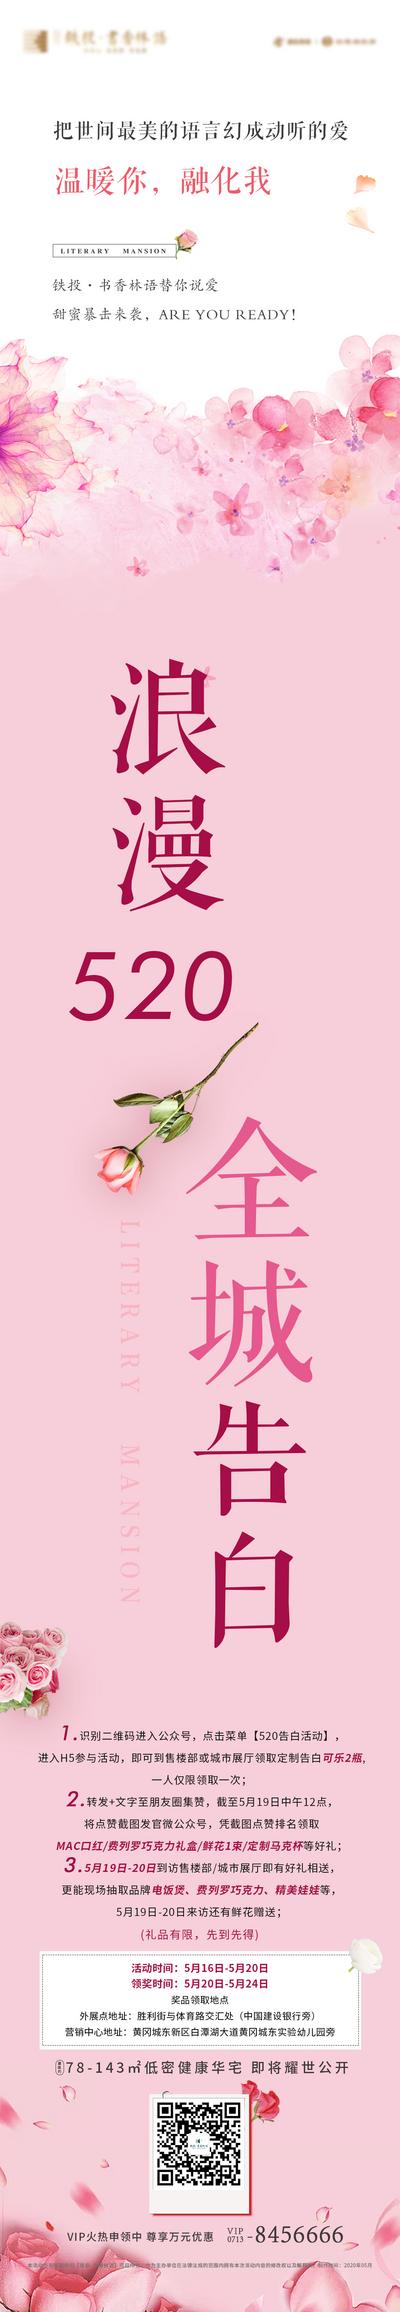 南门网 海报 长图 房地产 520 情人节 公历节日 告白 粉色 浪漫 玫瑰花